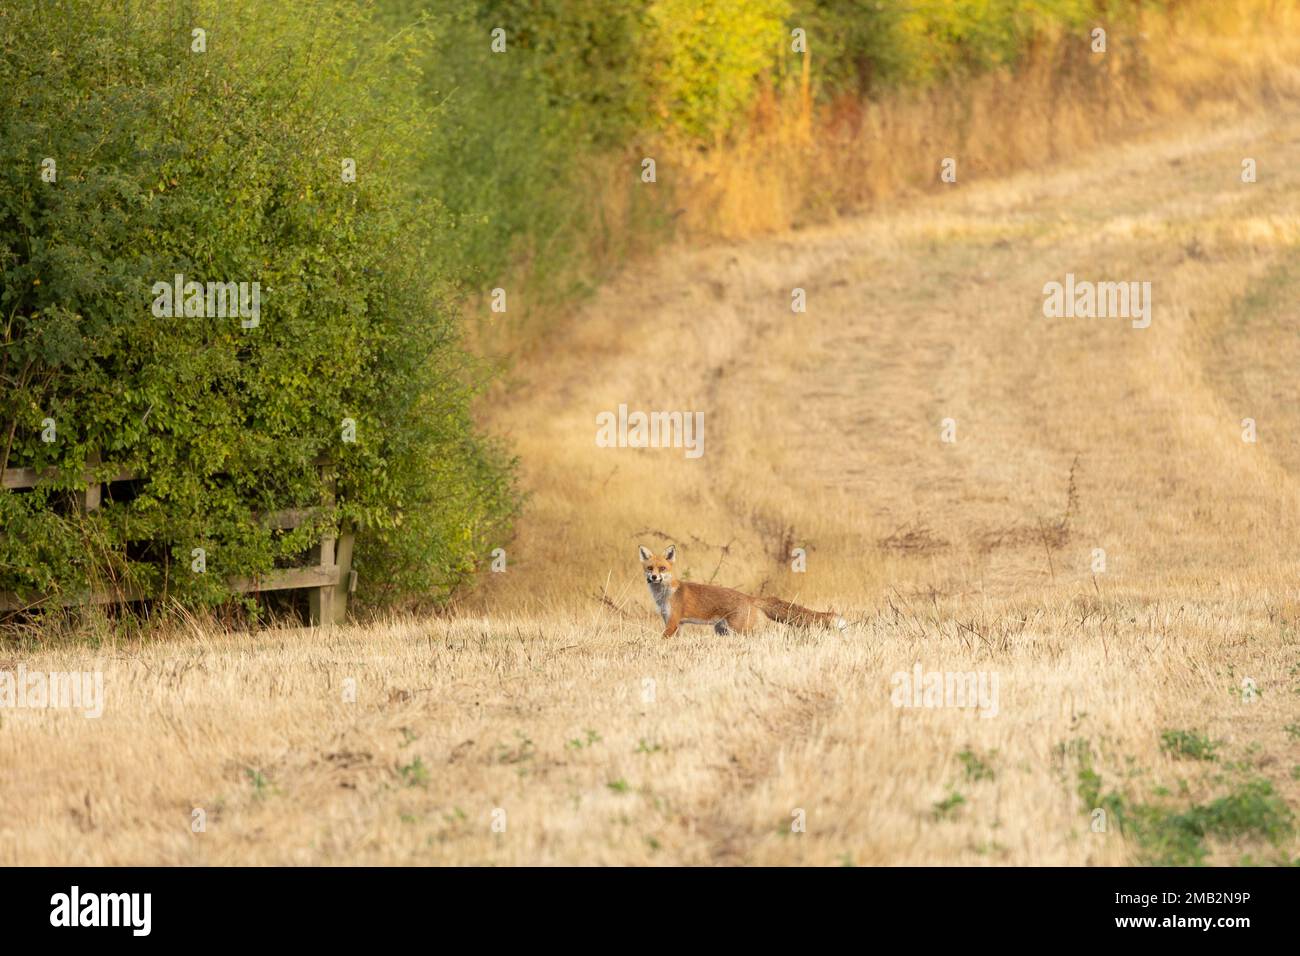 Wilde weibliche, vixen Rotfuchs wissenschaftlicher Name Vulpes vulpes jagt auf einem kürzlich gemähten Feld Stockfoto